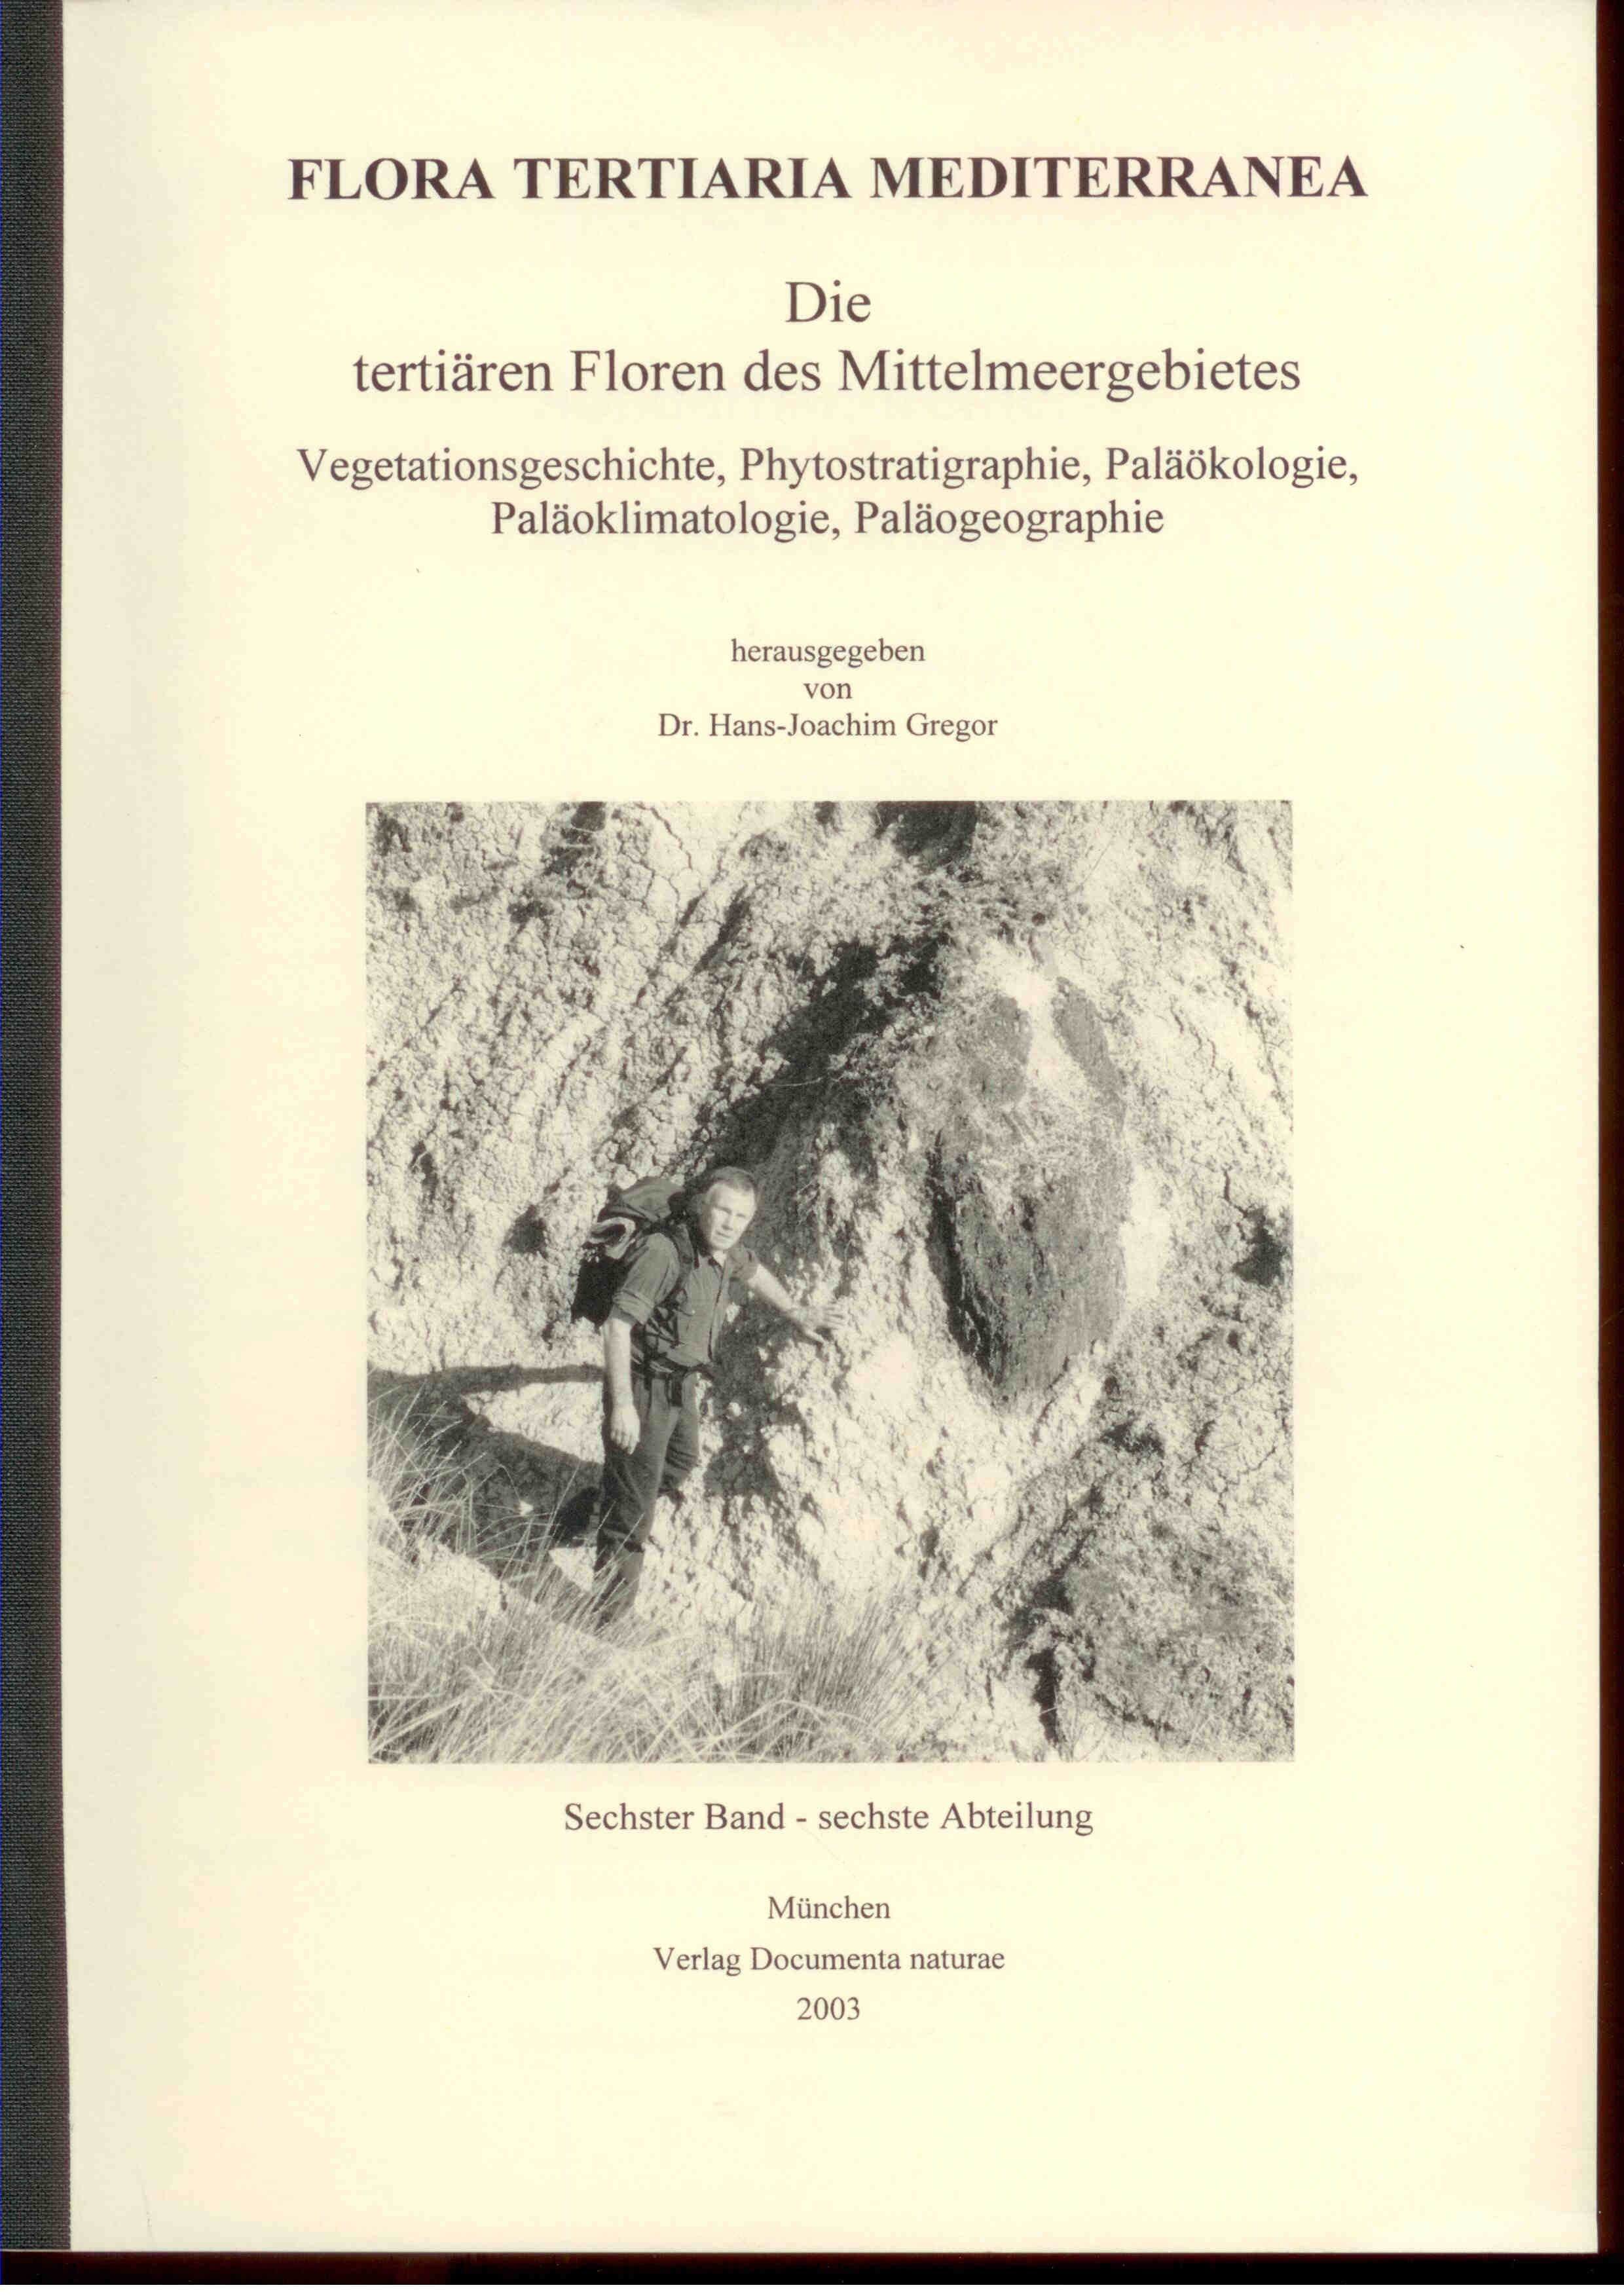 Flora Tertiaria Mediterranea. Die tertiären Floren des Mittelmeergebietes. Sechster Band- sechste Abteilung.